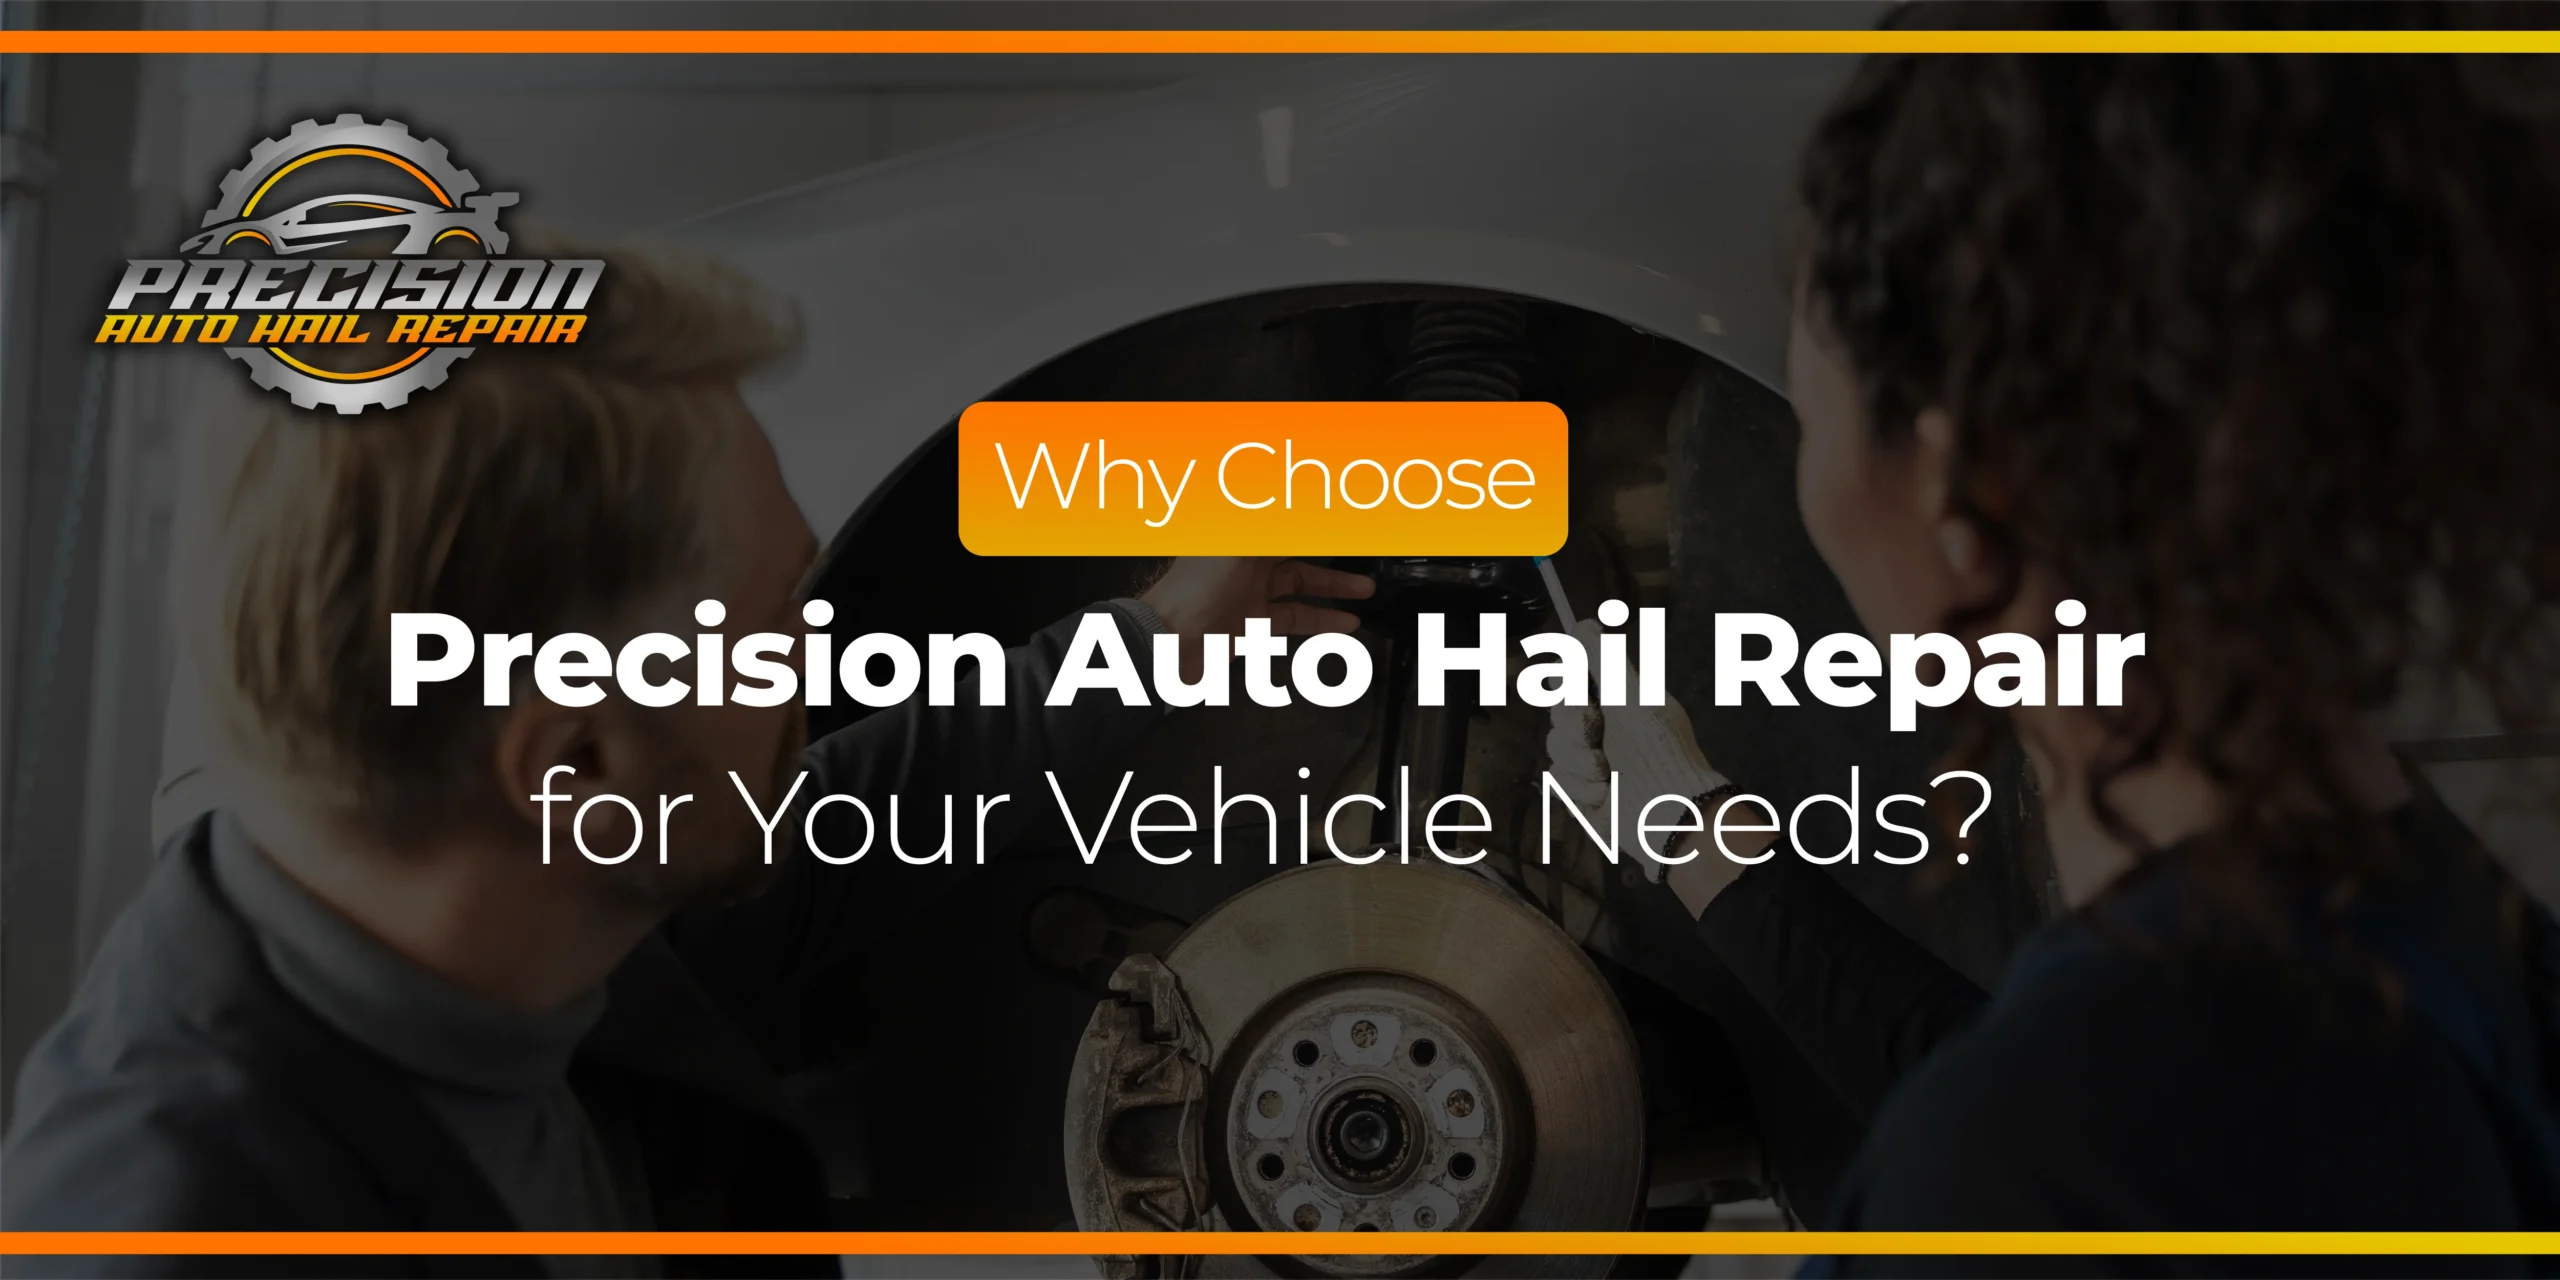 Precision Auto Hail Repair Choice